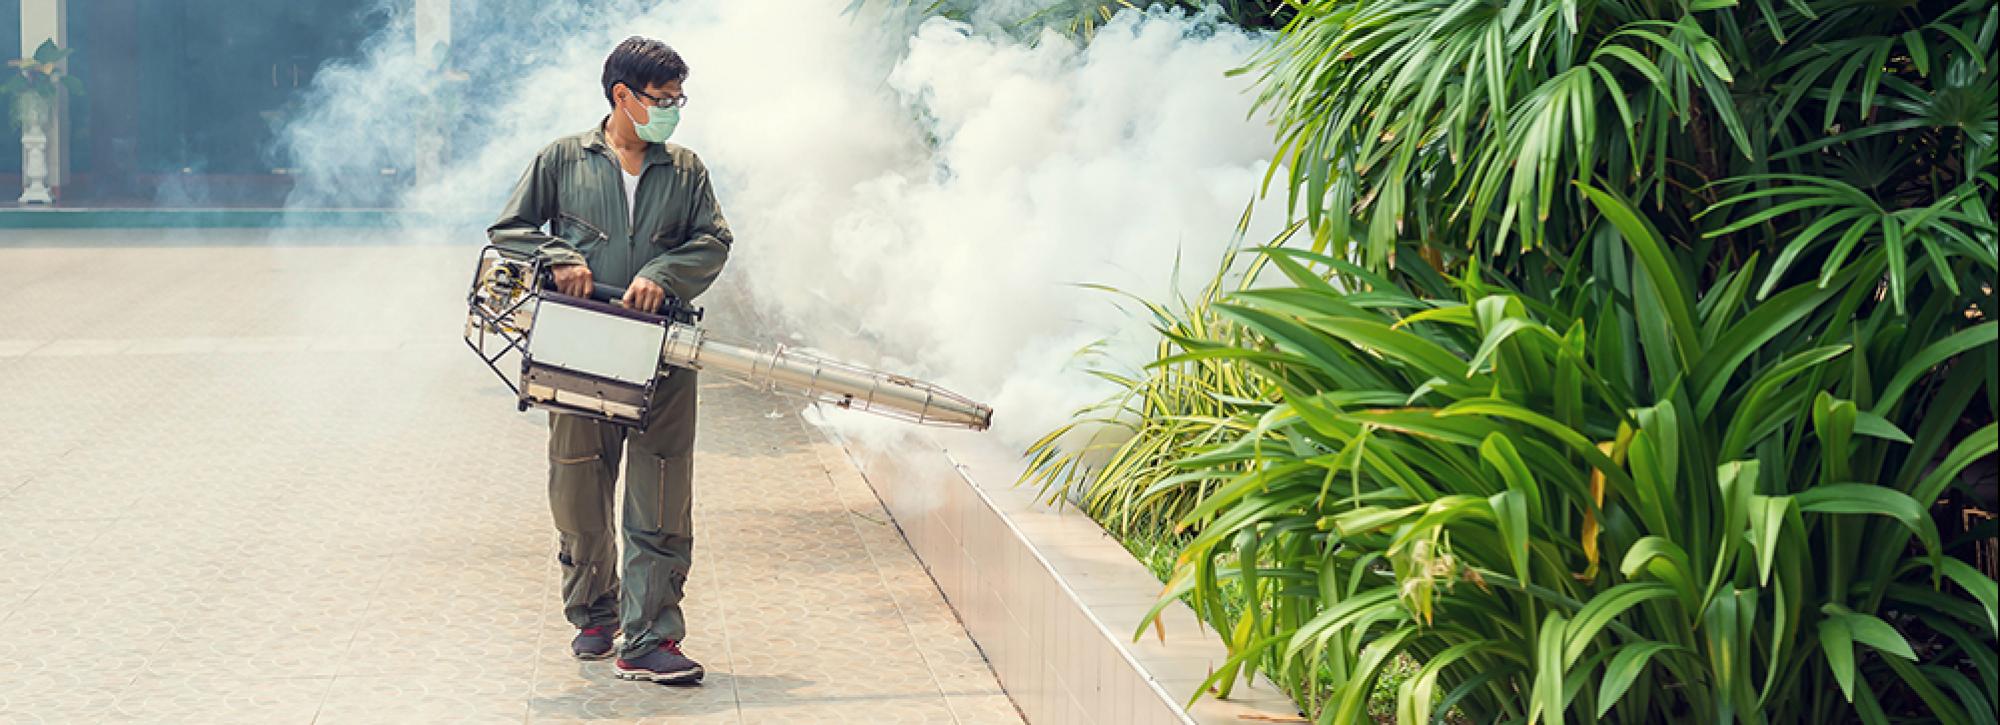 Fogging to eliminate mosquitos